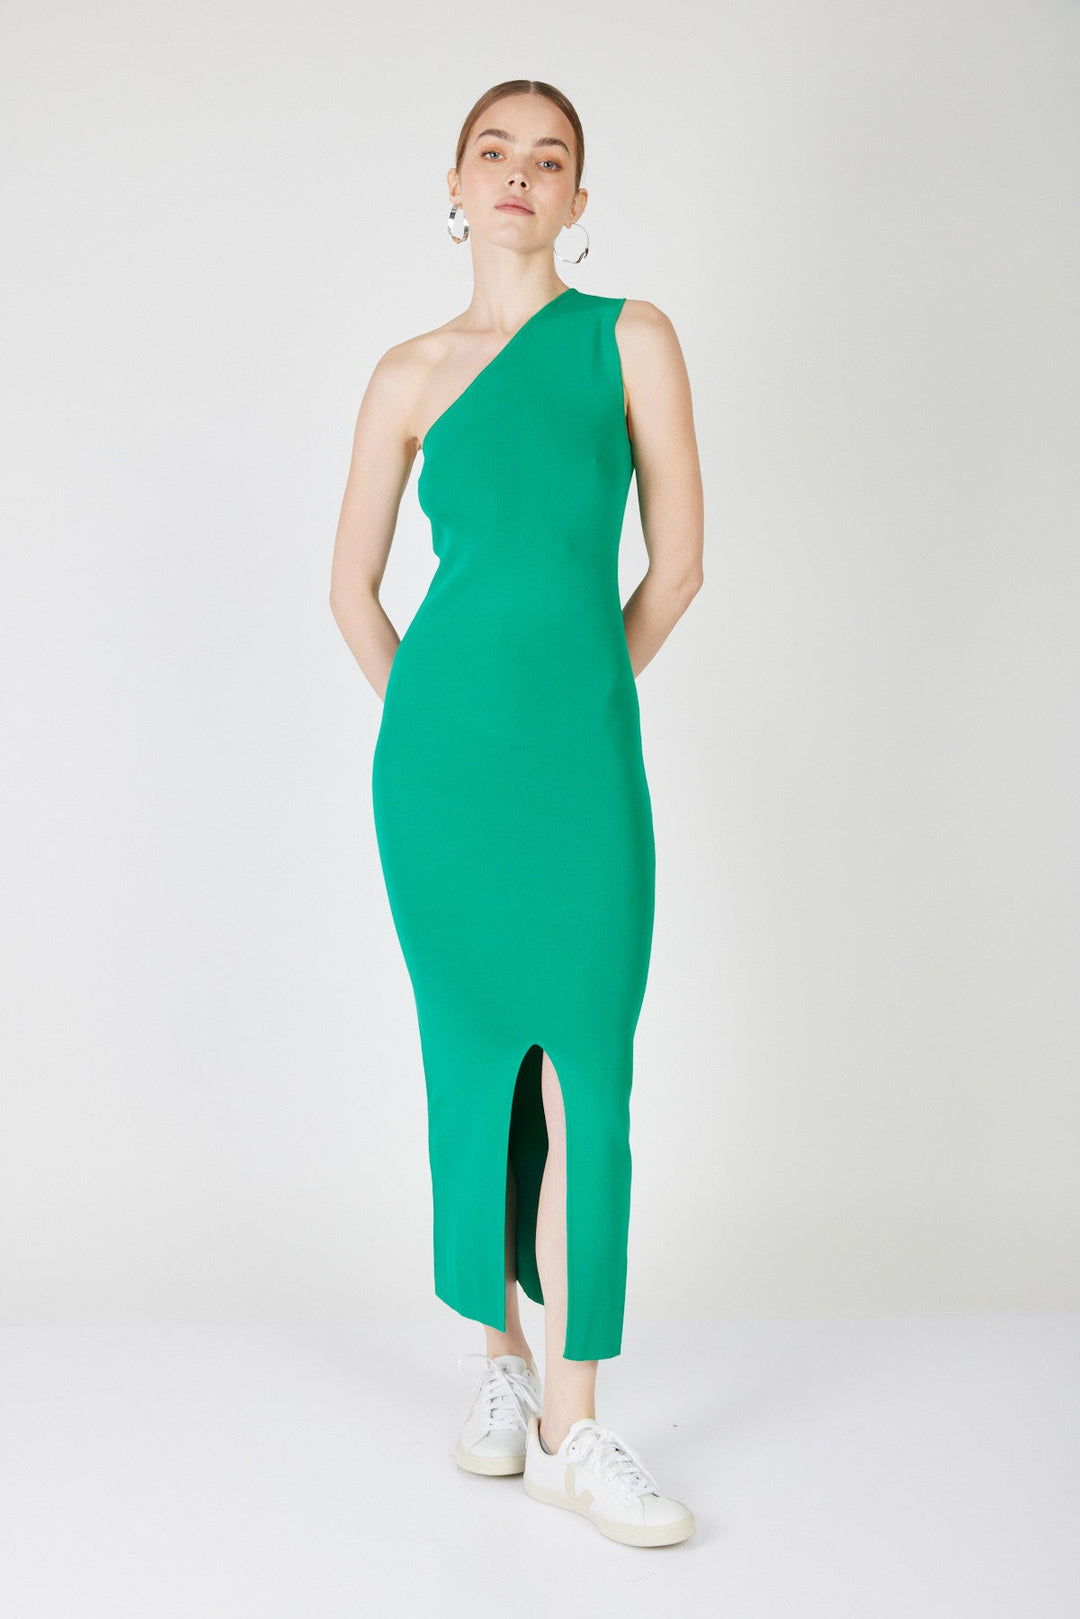 שמלת מקסי וואן שולדר פדריקה בצבע ירוק - Mother Ofall